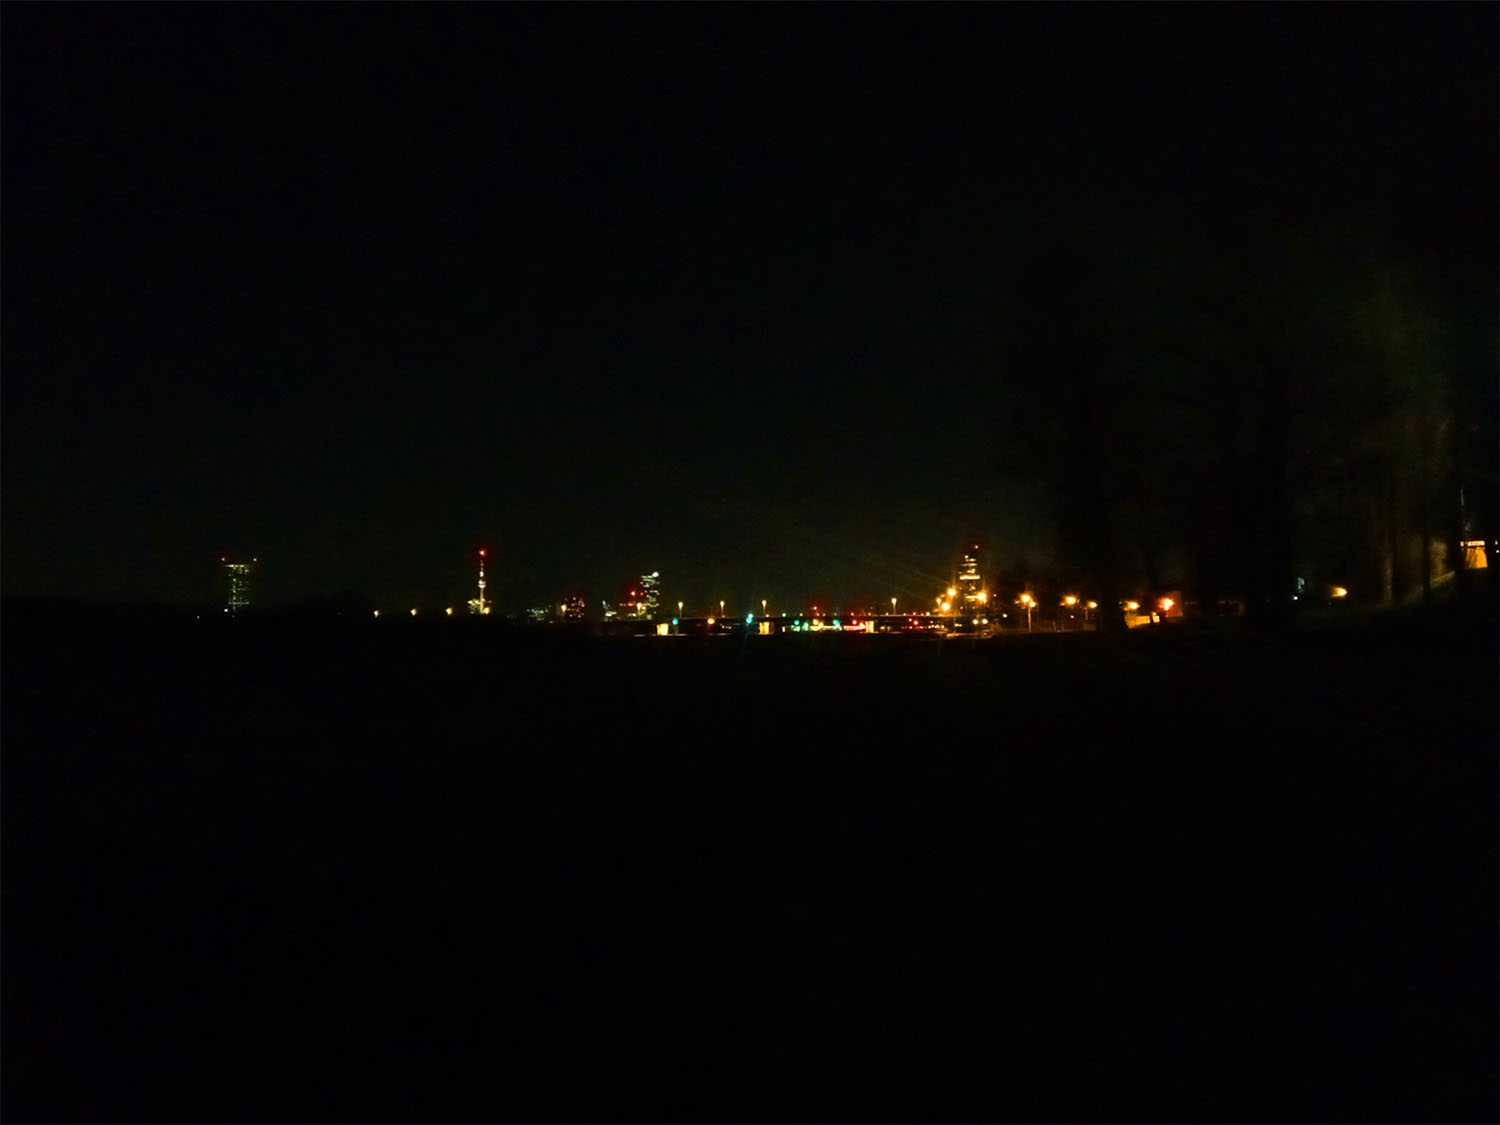 ウィーンの野宿スポット、背景の夜景の写真